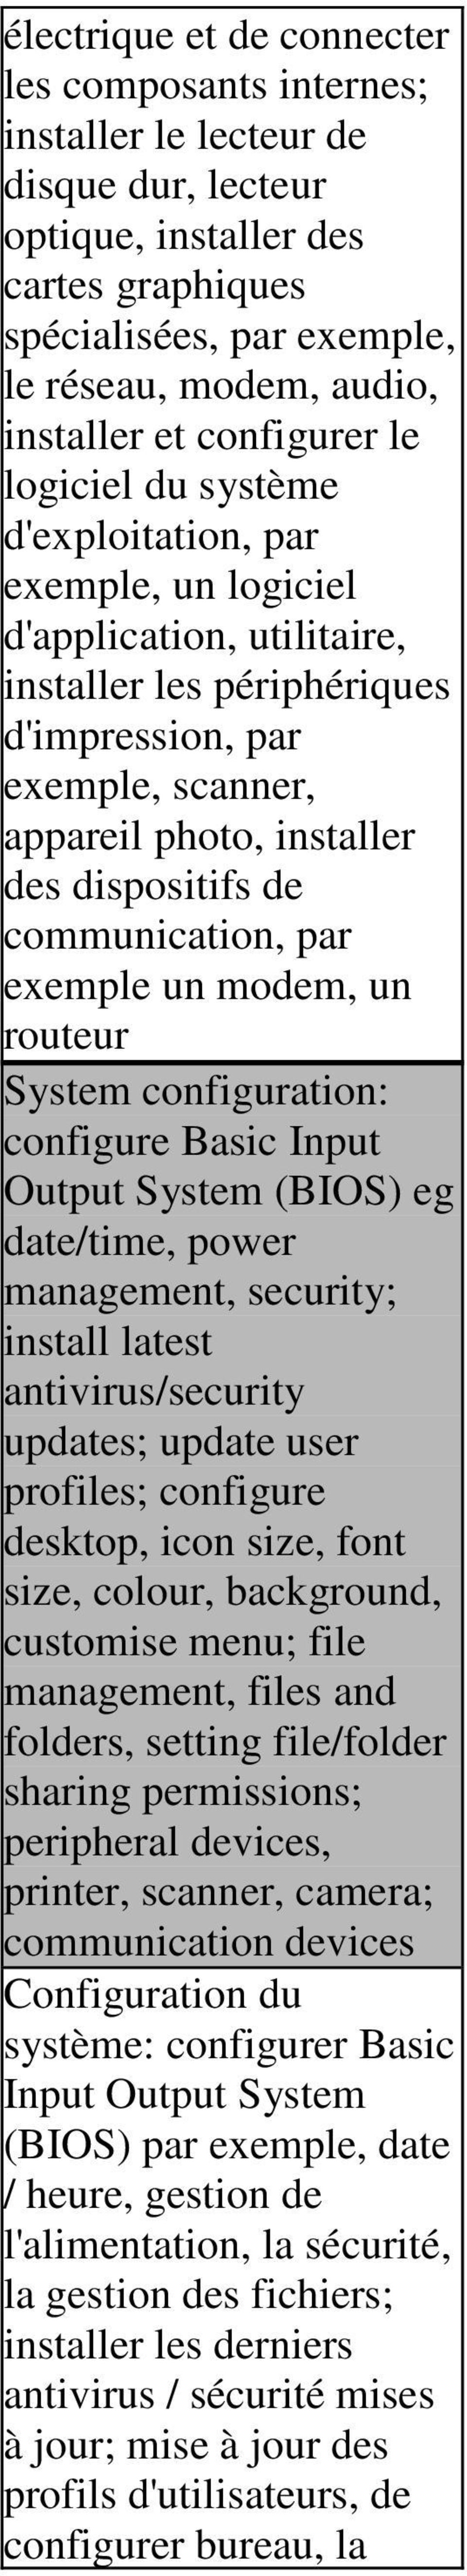 dispositifs de communication, par exemple un modem, un routeur System configuration: configure Basic Input Output System (BIOS) eg date/time, power management, security; install latest